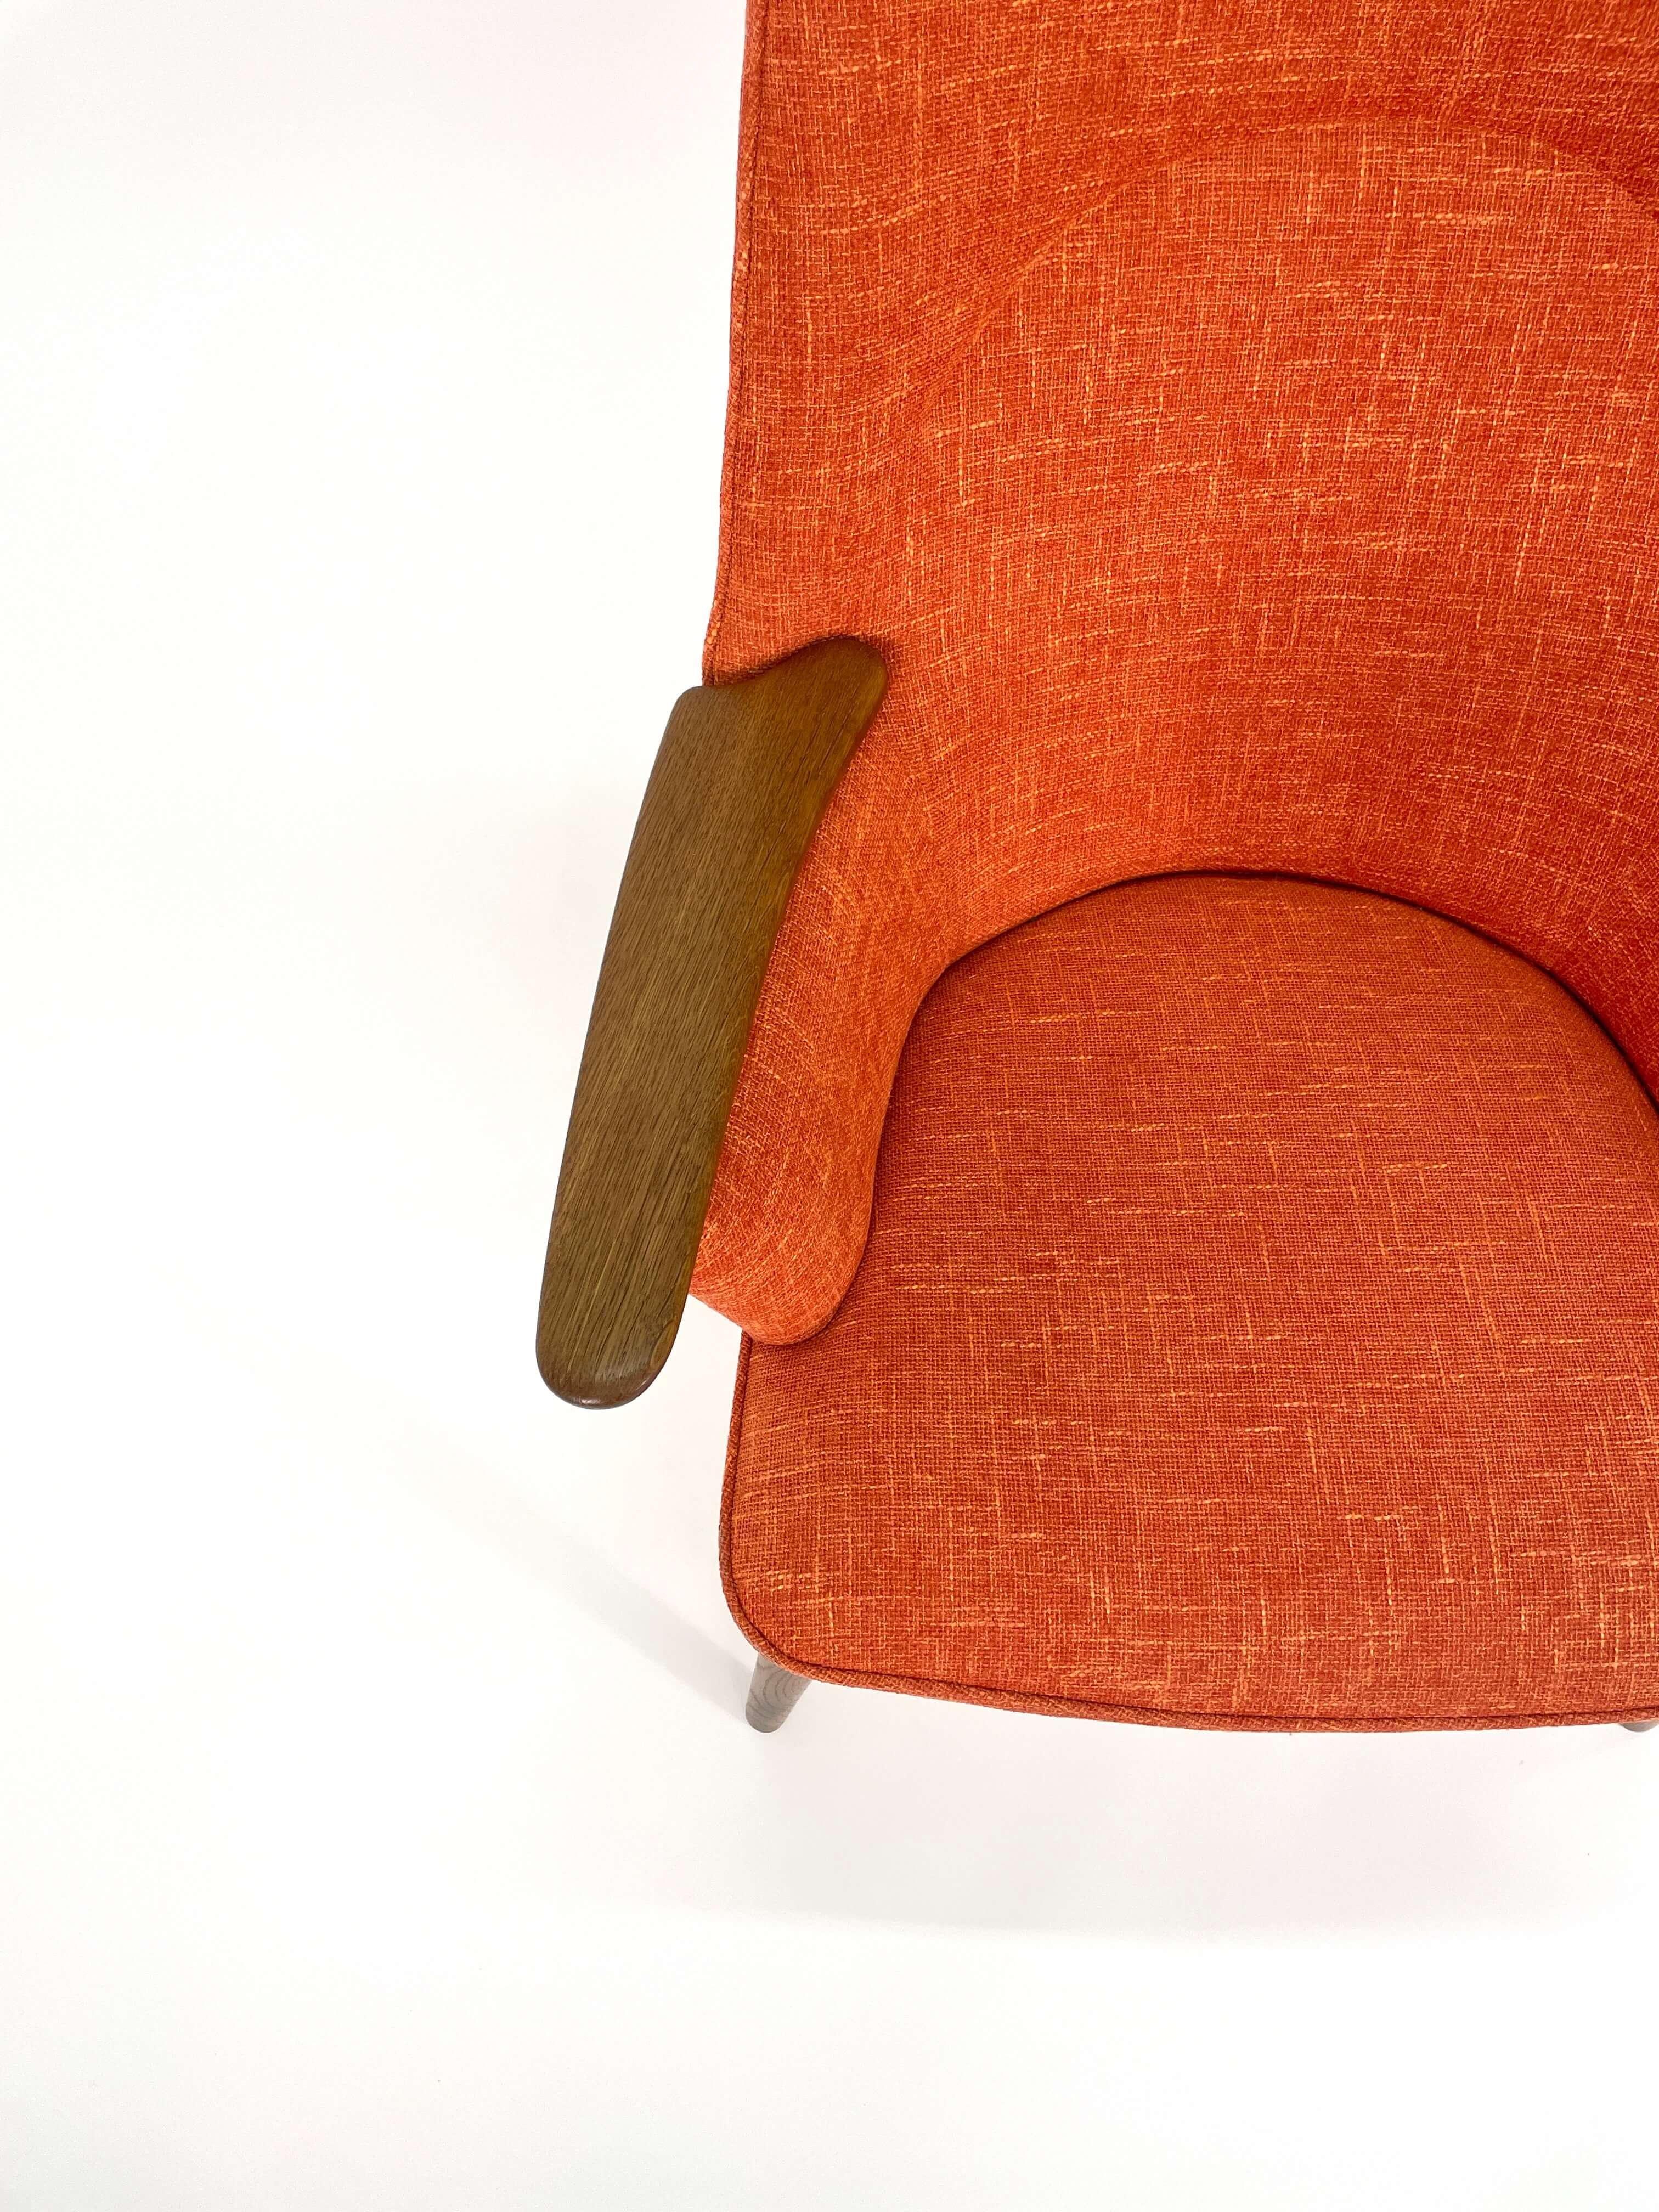 Hans J. Wegner Mama Bear Lounge Chair Model AP 27 12